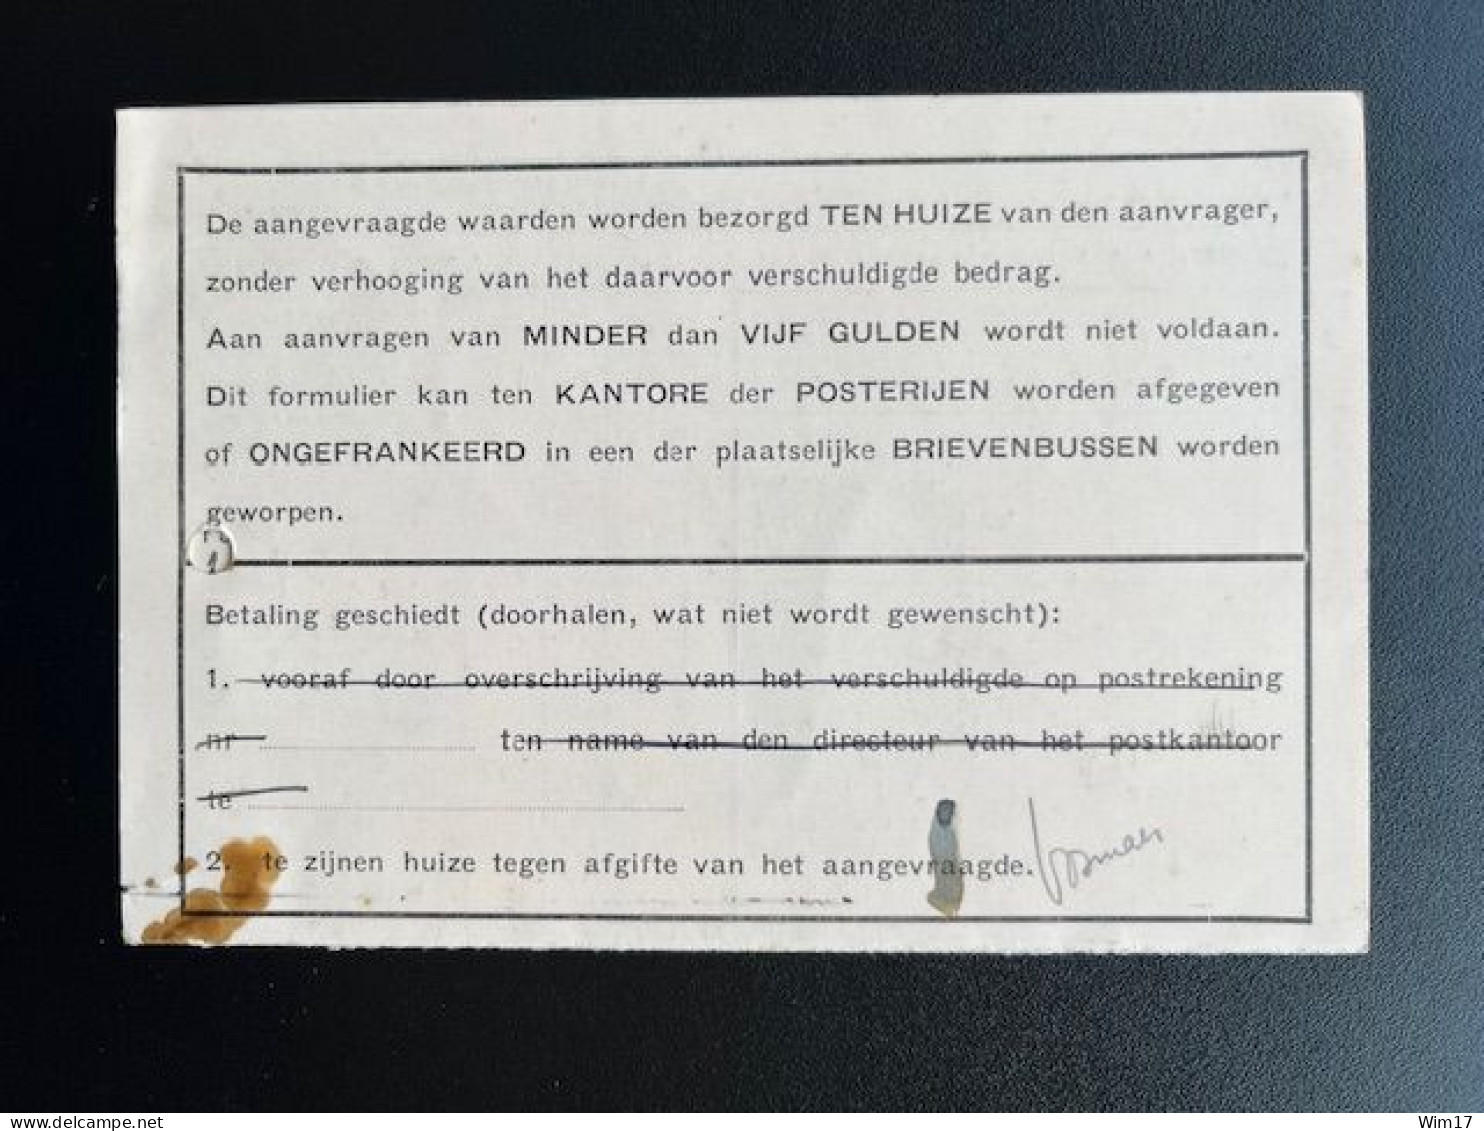 NETHERLANDS 1943 POSTCARD LEIDEN 08-06-1943 NEDERLAND DIENST PTT MODEL P 60A L 1392-'39 - Lettres & Documents